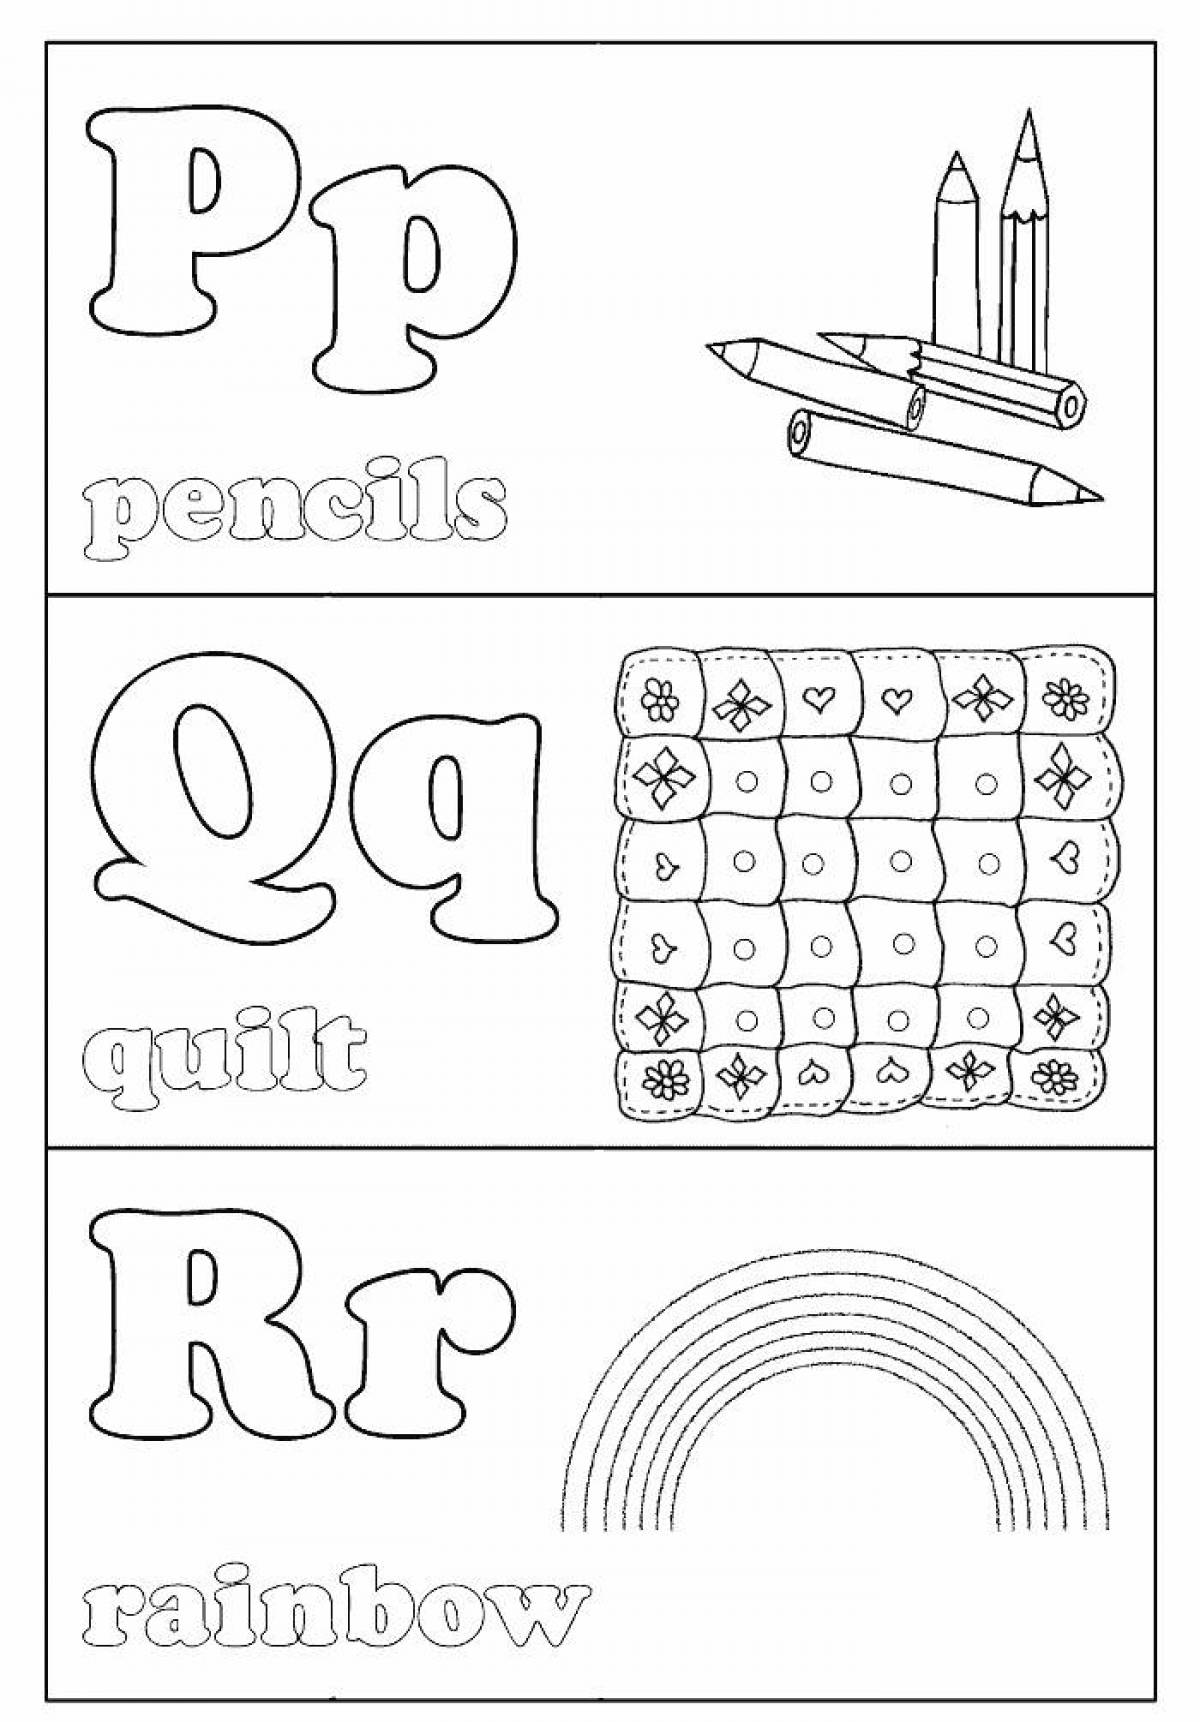 Креативная раскраска английского алфавита для детей